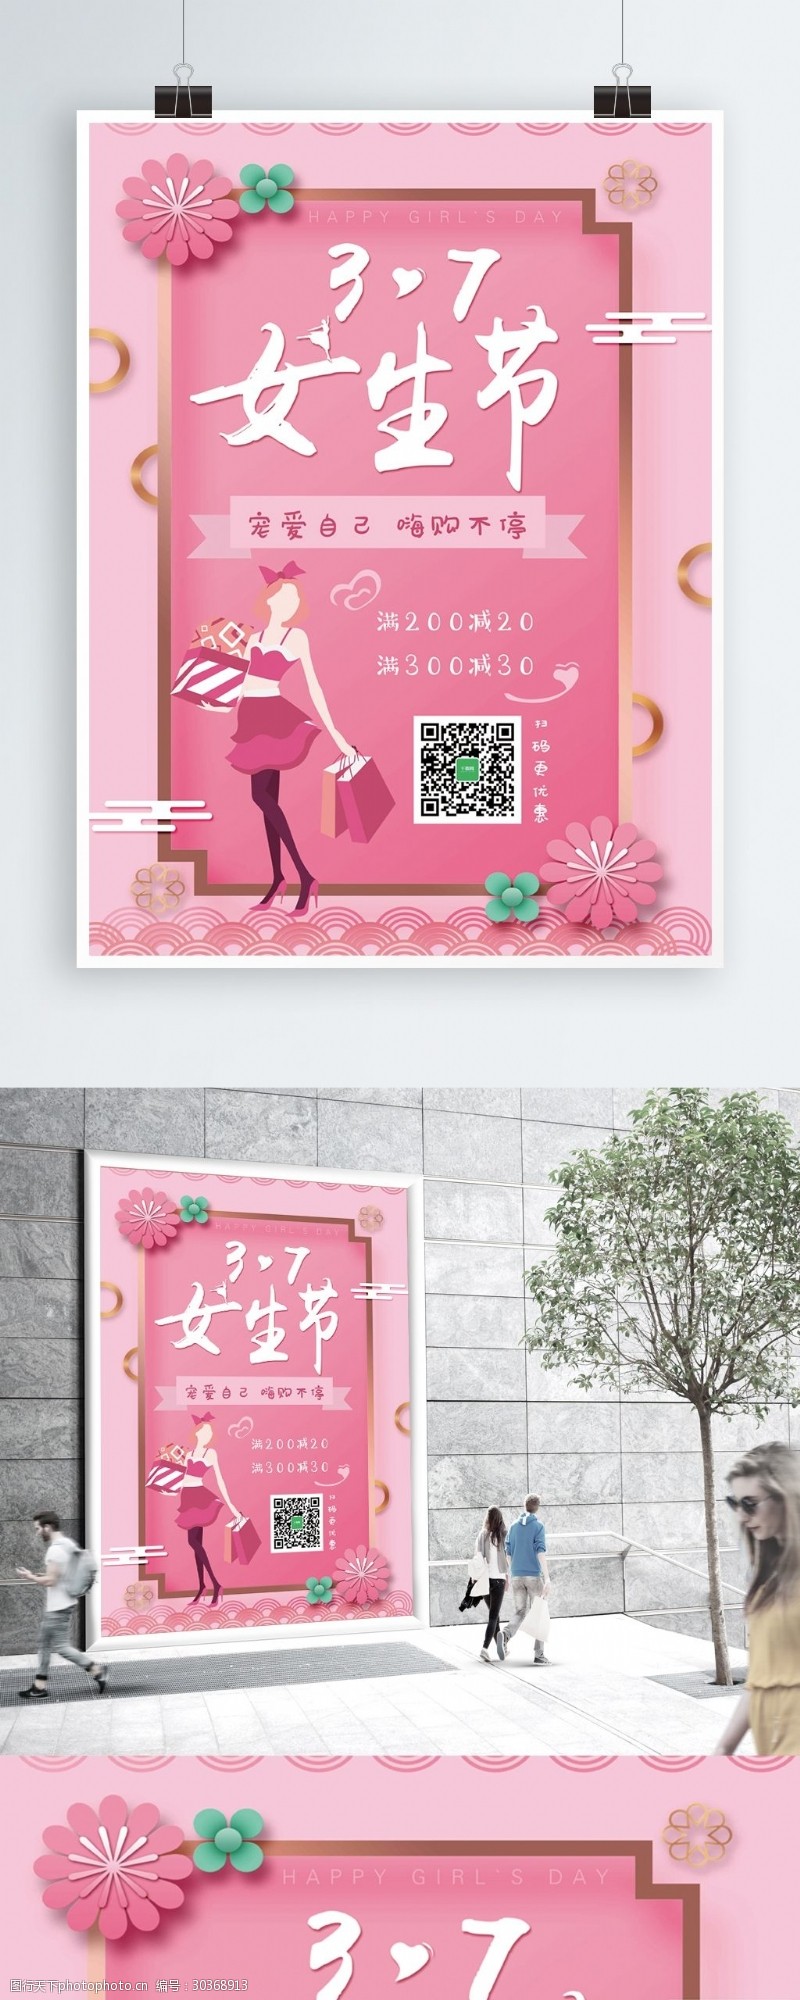 女生节粉色简约大气节日促销海报